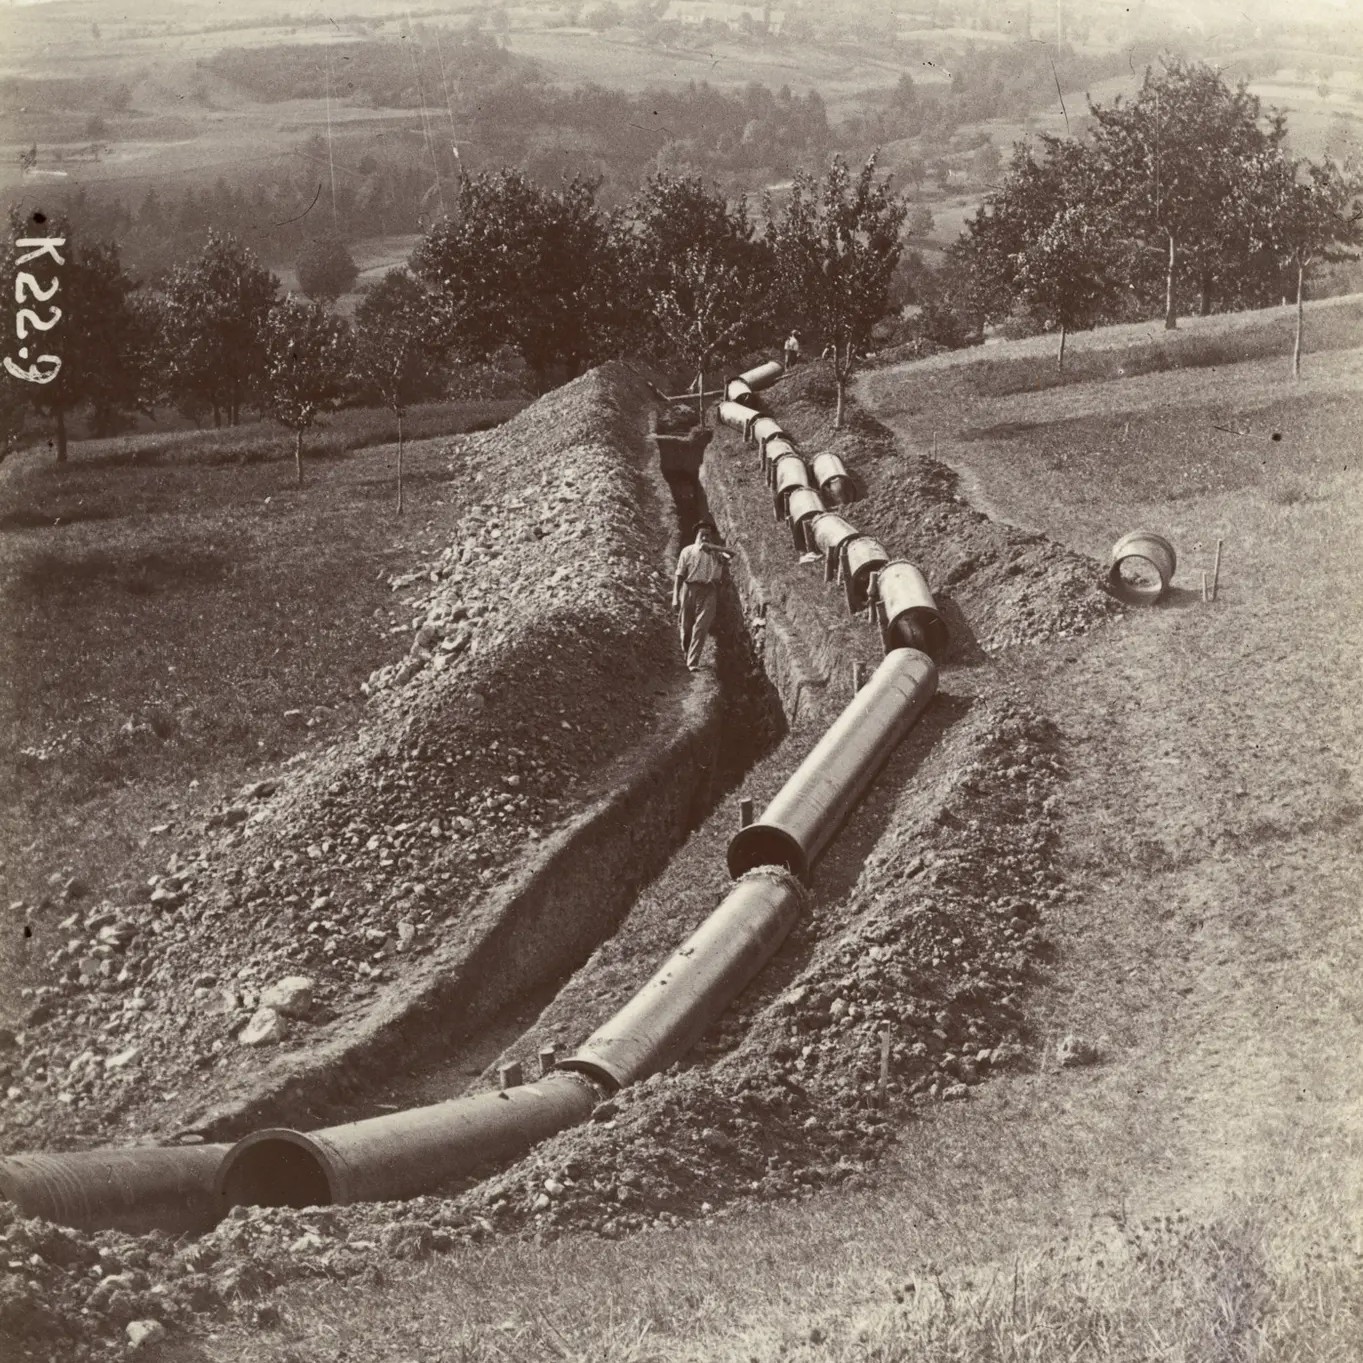 Frédéric Rochat-Mercier, canalisation vers Lutry pendant le chantier d'adduction des eaux dans le Pays-d’Enhaut, photographie, vers 1900, coll. Musée Historique Lausanne.